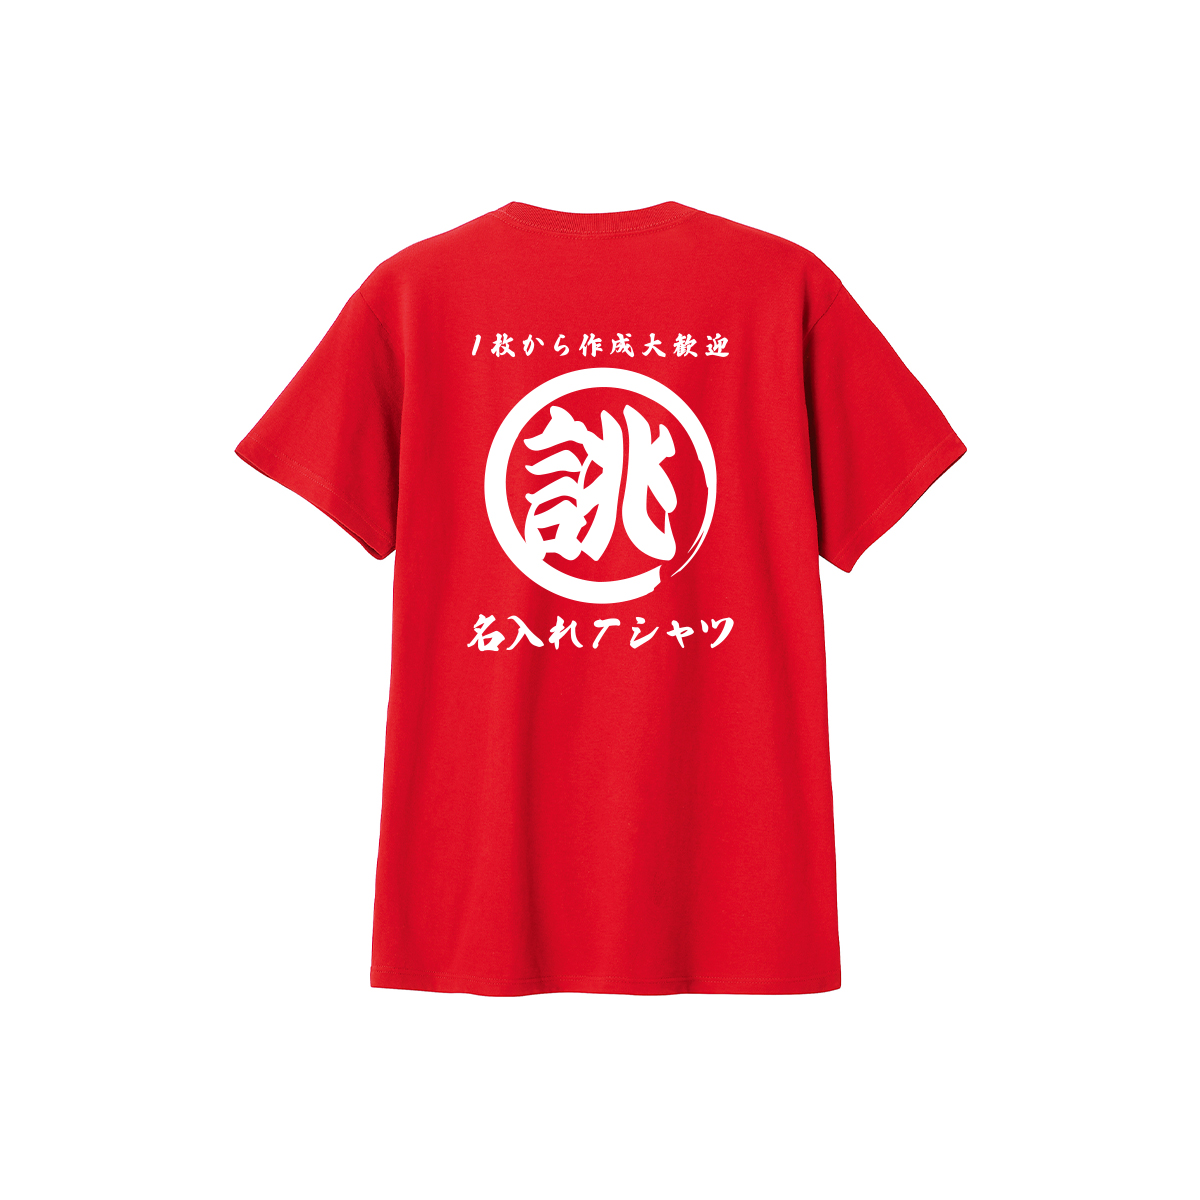 大きいサイズ 名入れ オリジナル tシャツ 1枚から 作成 お揃い 文字 漢字 言葉 おもしろtシャ...